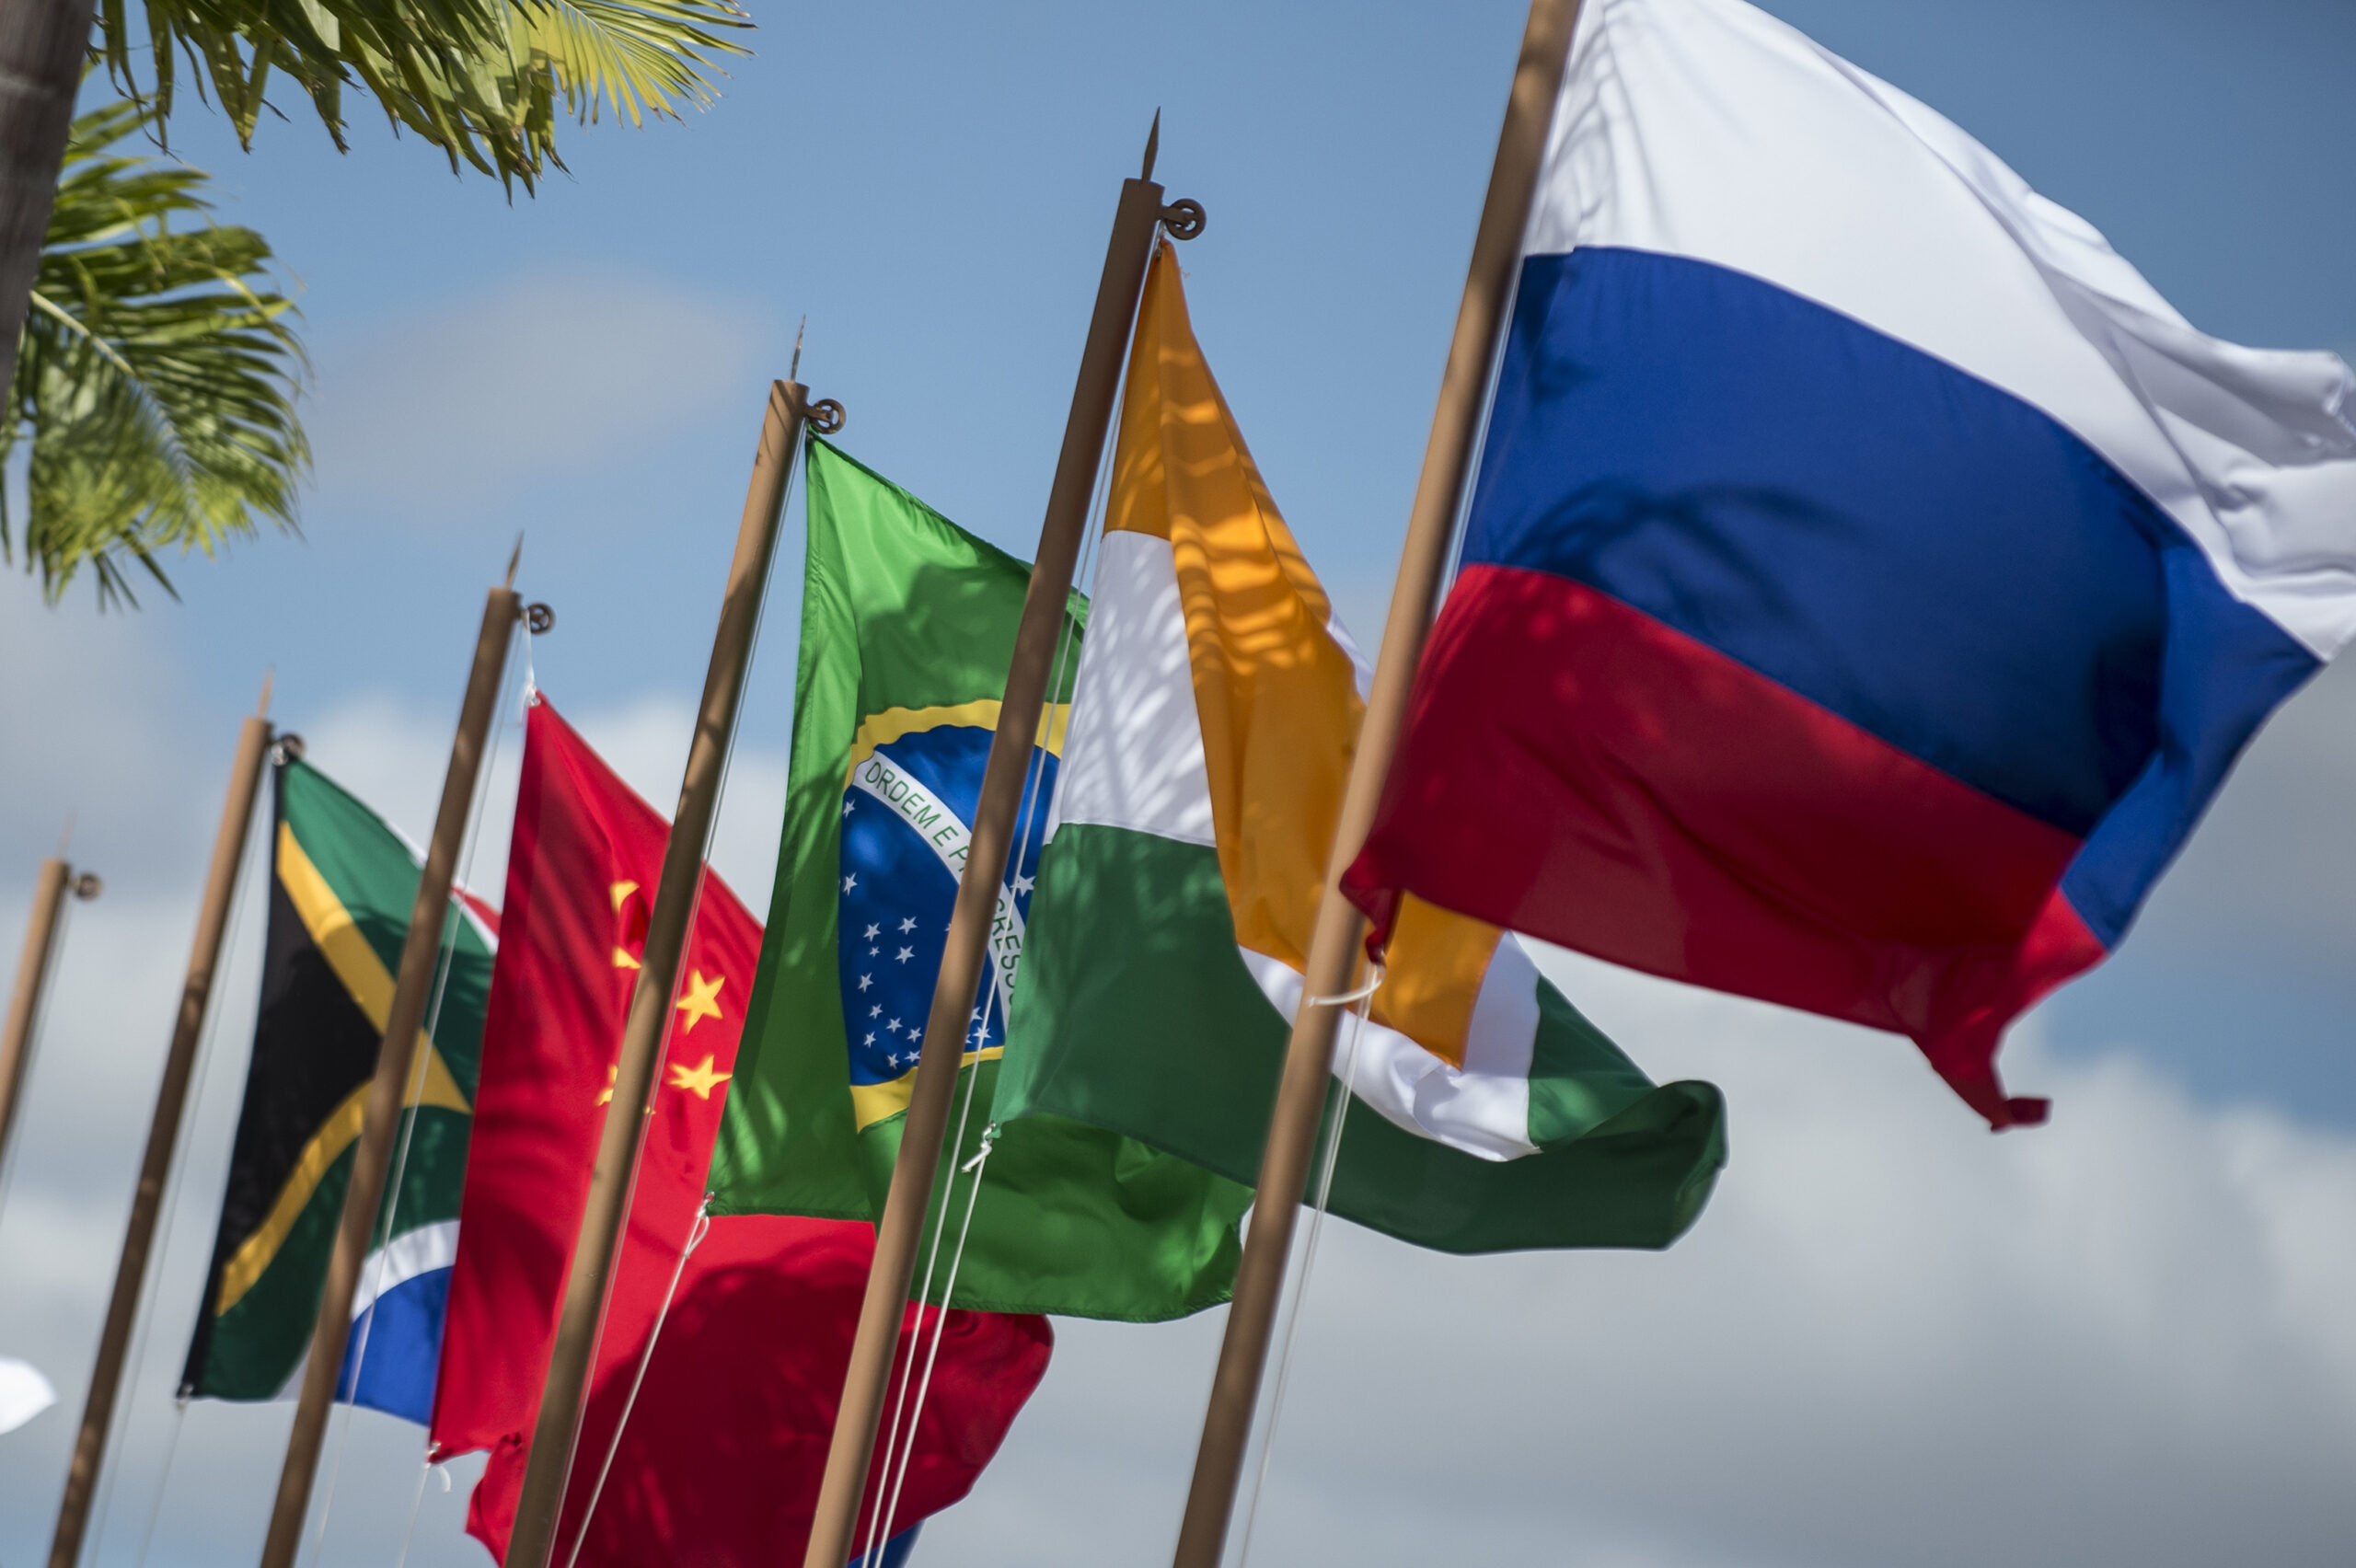 Putin não vai participar da cúpula dos BRICS na África do Sul em agosto